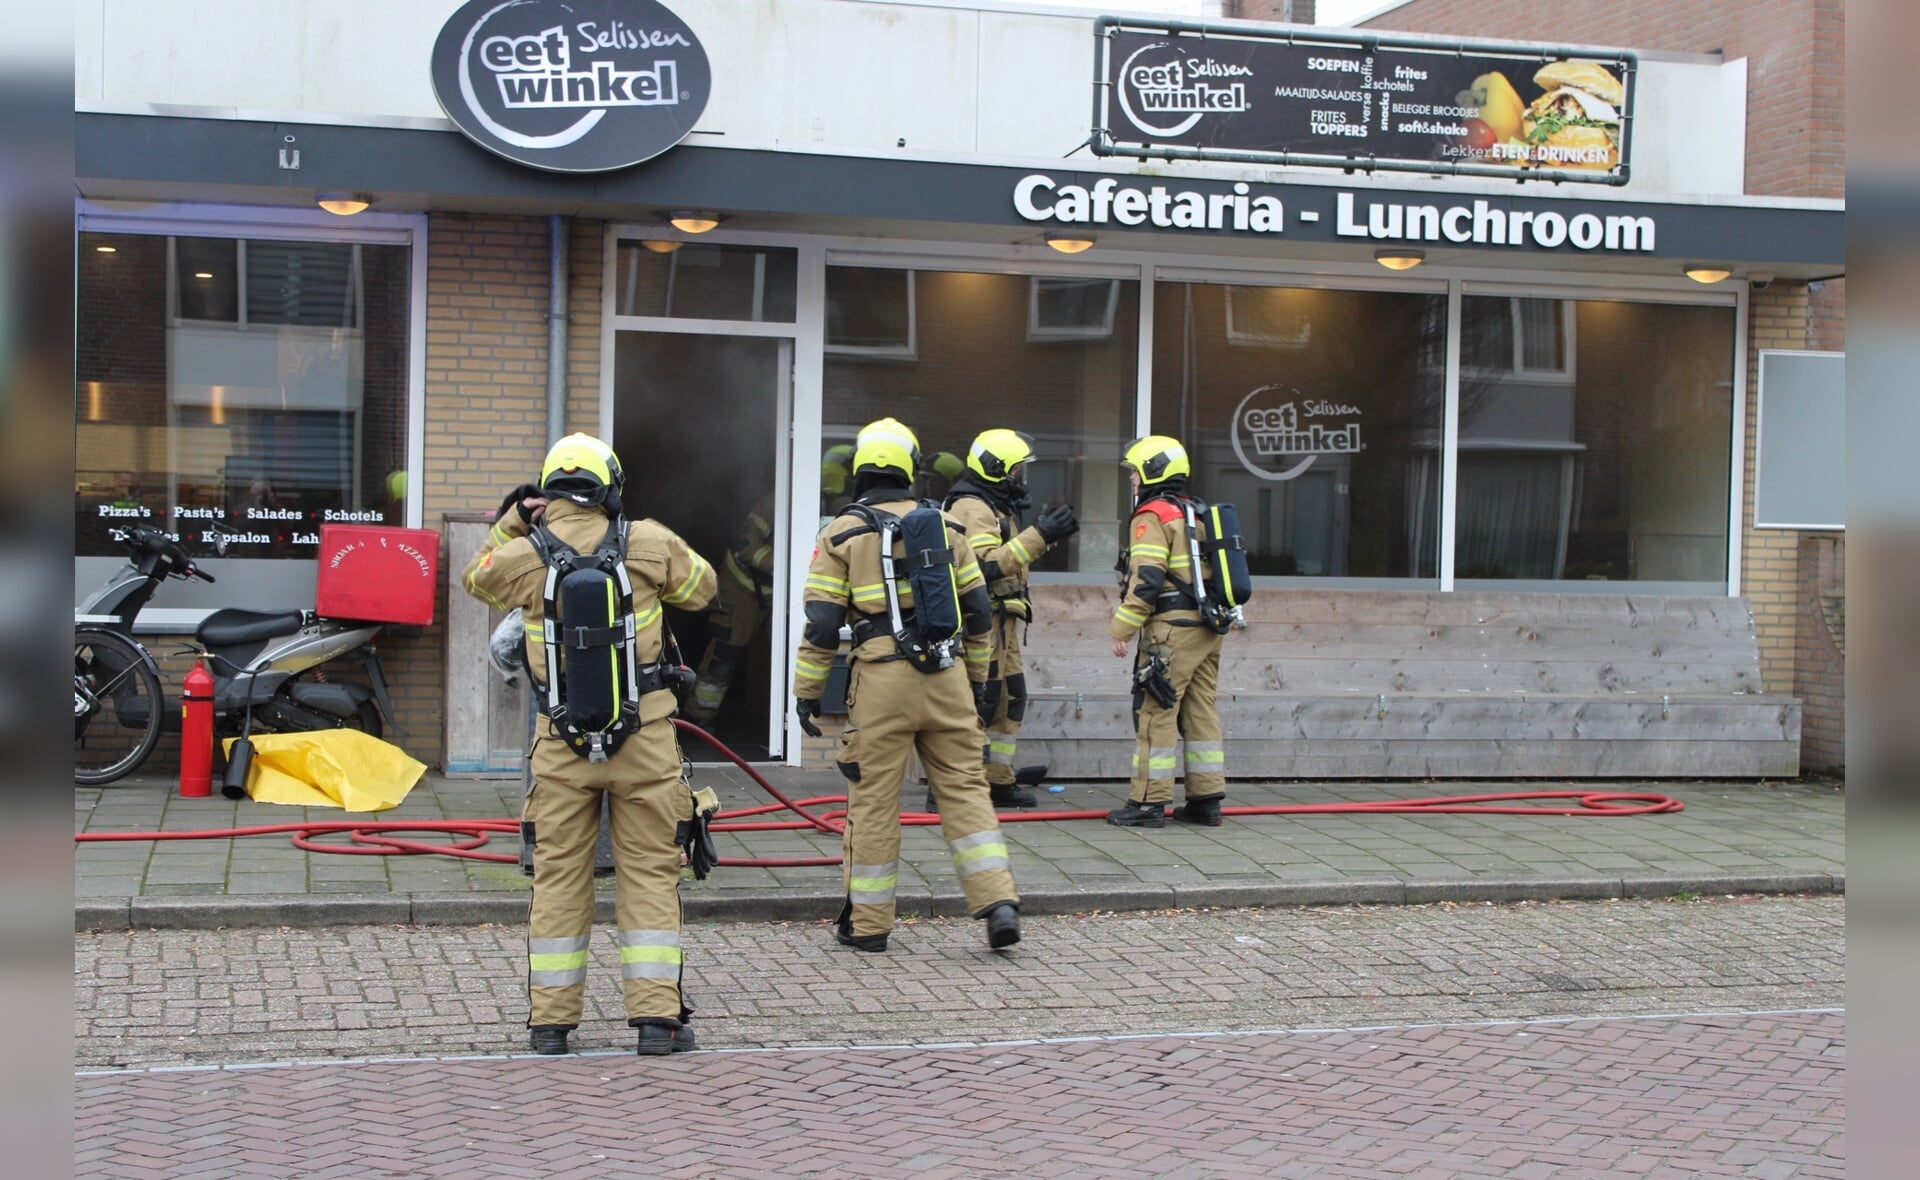 Een frituurpan vatte woensdagmiddag vlam bij Eetwinkel Selissen, daardoor ontstond veel rook.